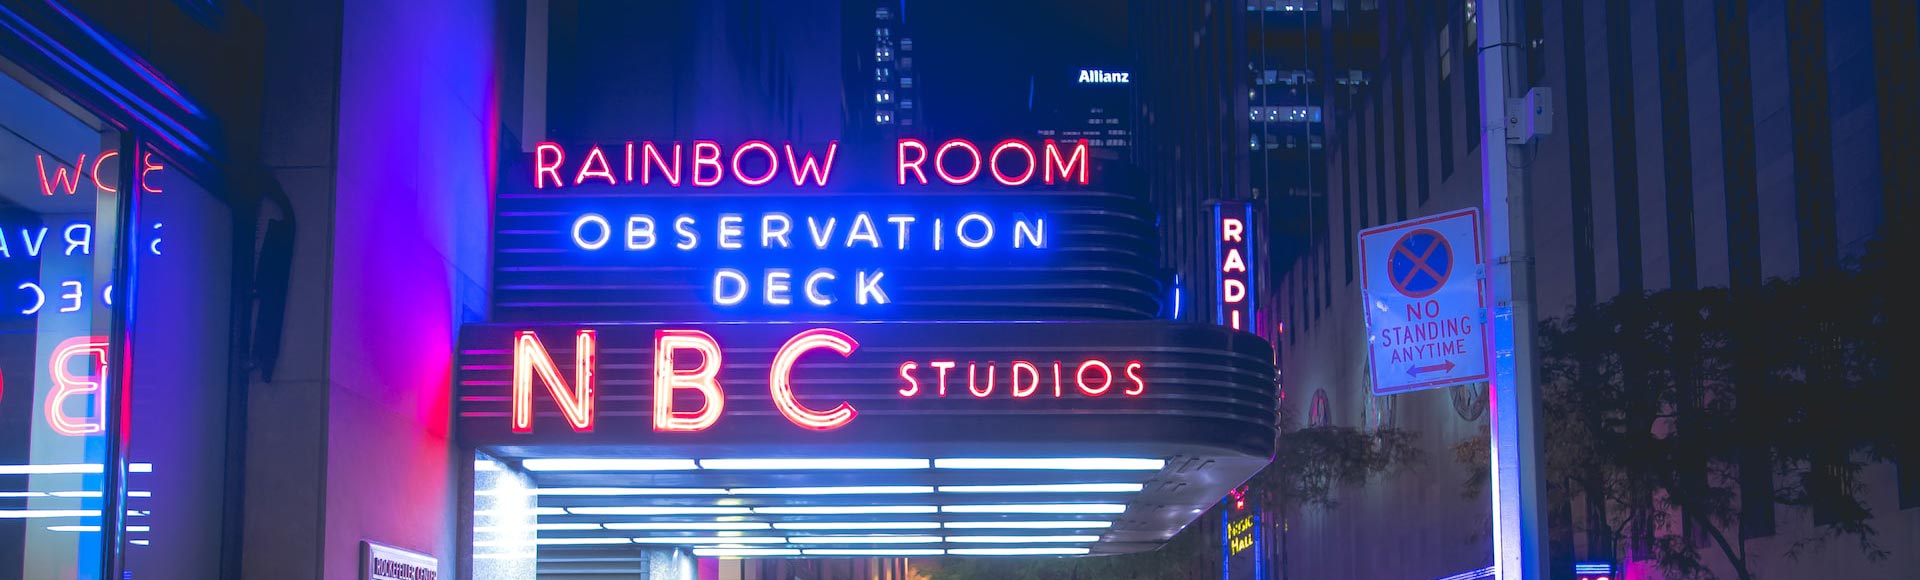 Неоновая вывеска смотровой площадки NBC ночью